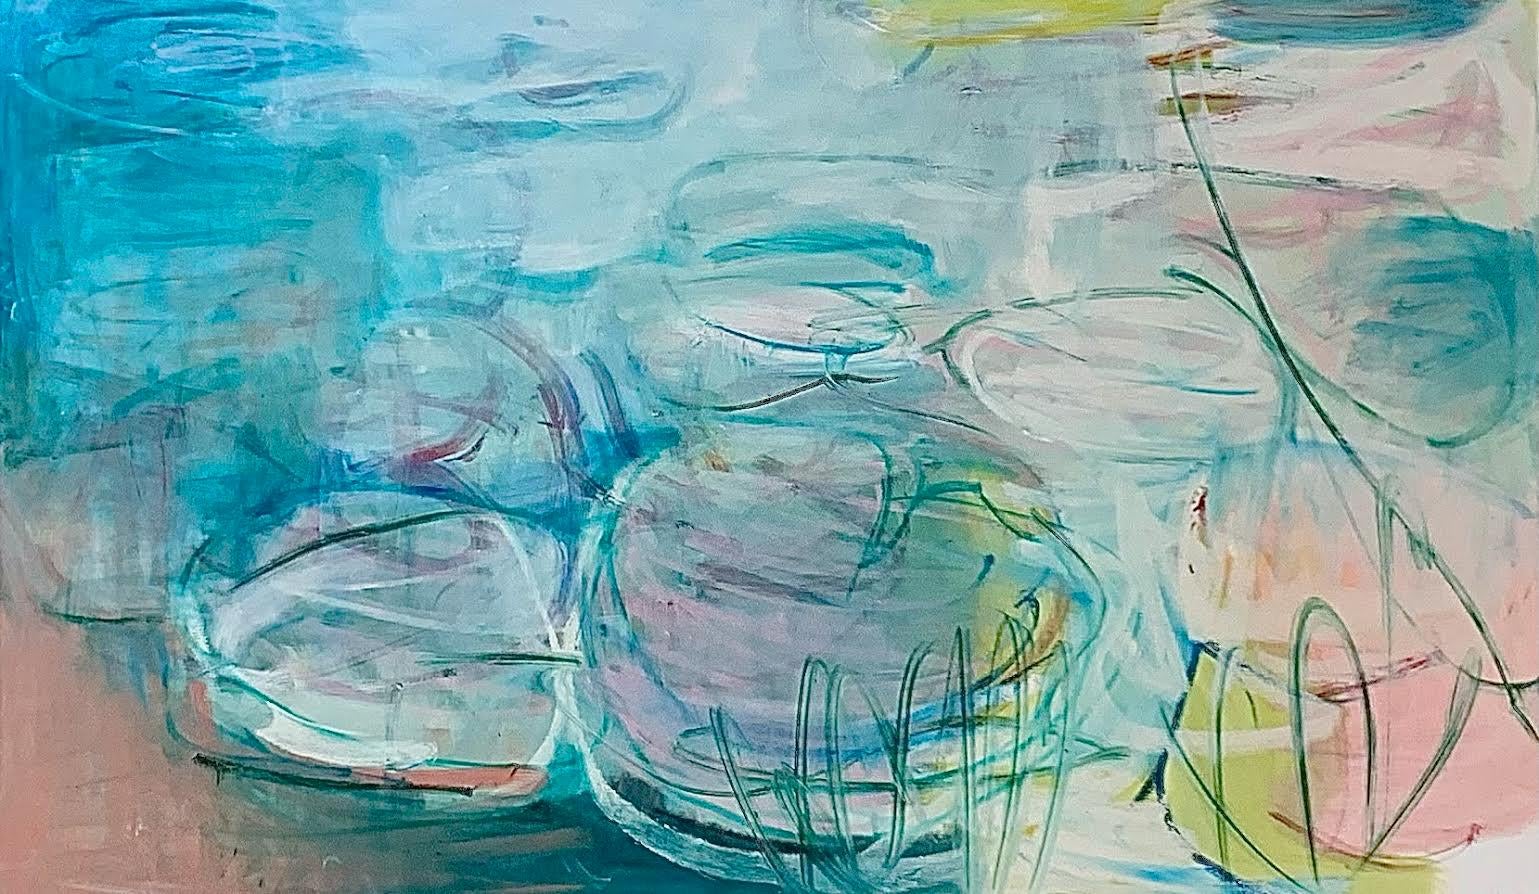 Erhältlich bei Madelyn Jordon Fine Art. Lilien im Licht" der französischen Künstlerin Sandrine Kern aus New York City. 2022. Öl und Kaltwachs auf Leinwand, 36 x 60 Zoll. Dieses abstrakte Landschaftsgemälde zeigt einen Teich und eine Seerosenszene in